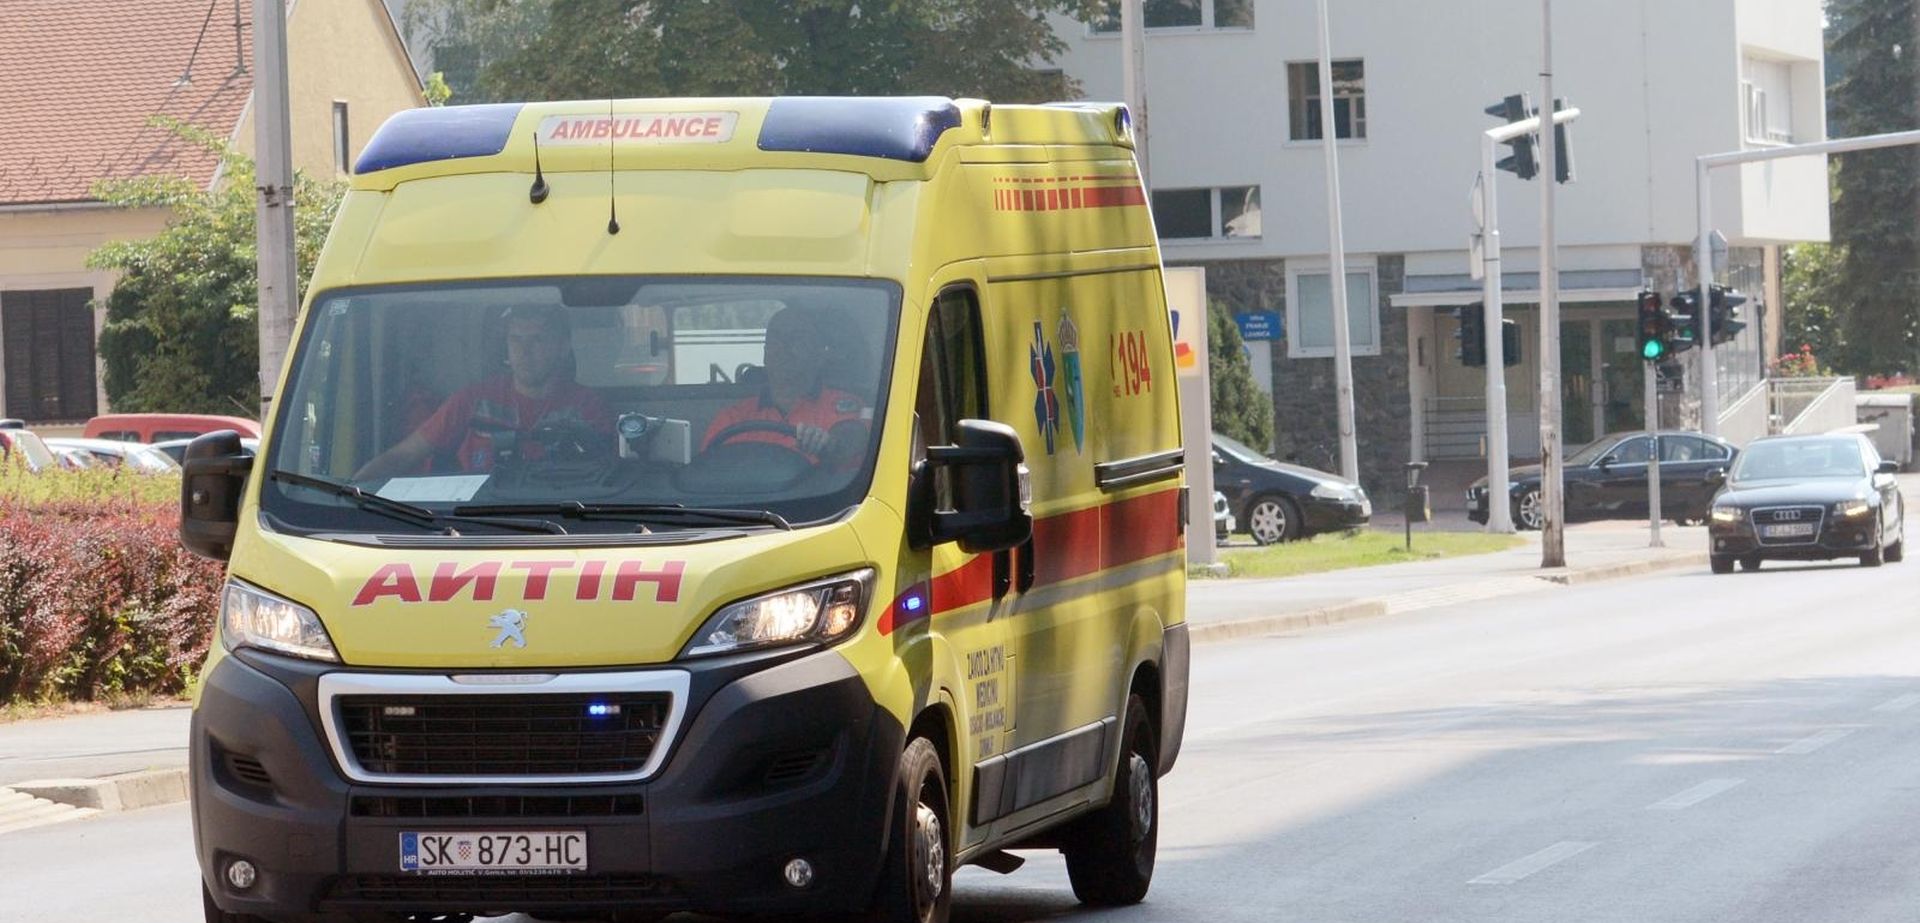 Sisak: Vozilo hitne medicinske pomoci u gradskom prometu 17.08.2018., Sisak - Vozilo hitne medicinske pomoci u gradskom prometu. 
Photo: Nikola Cutuk/PIXSELL